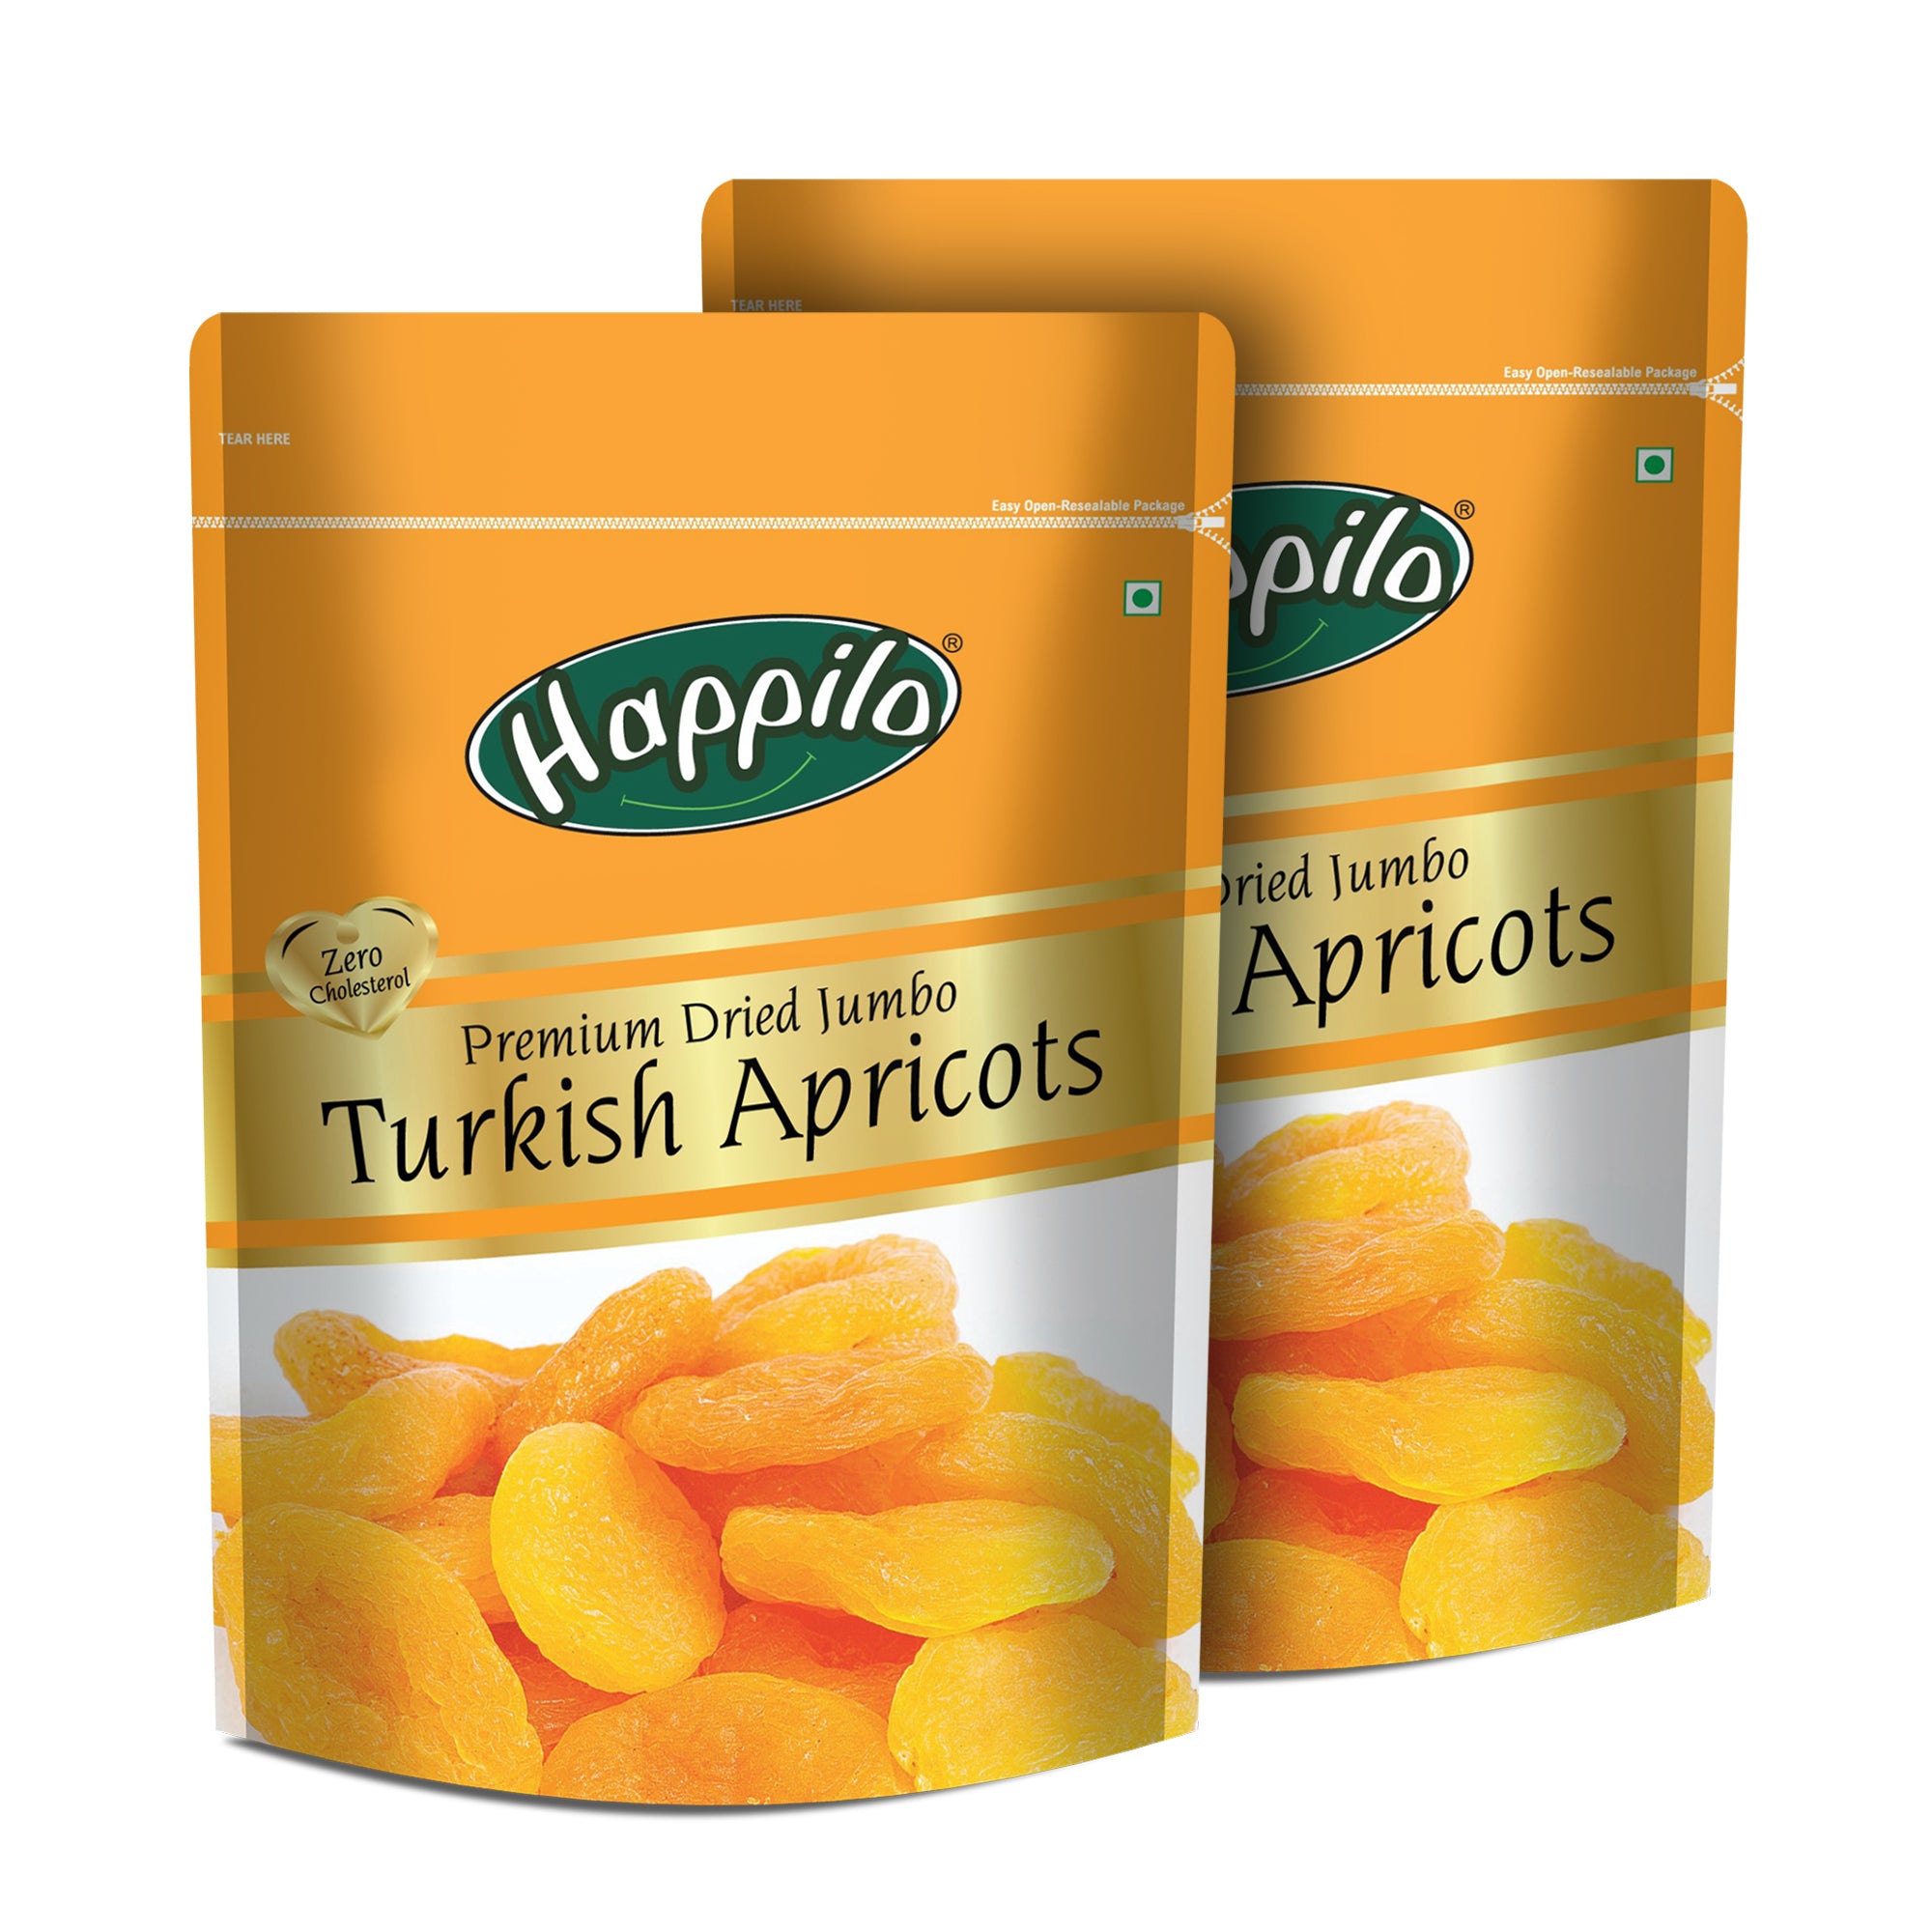 Happilo Premium Dried Turkish Apricots